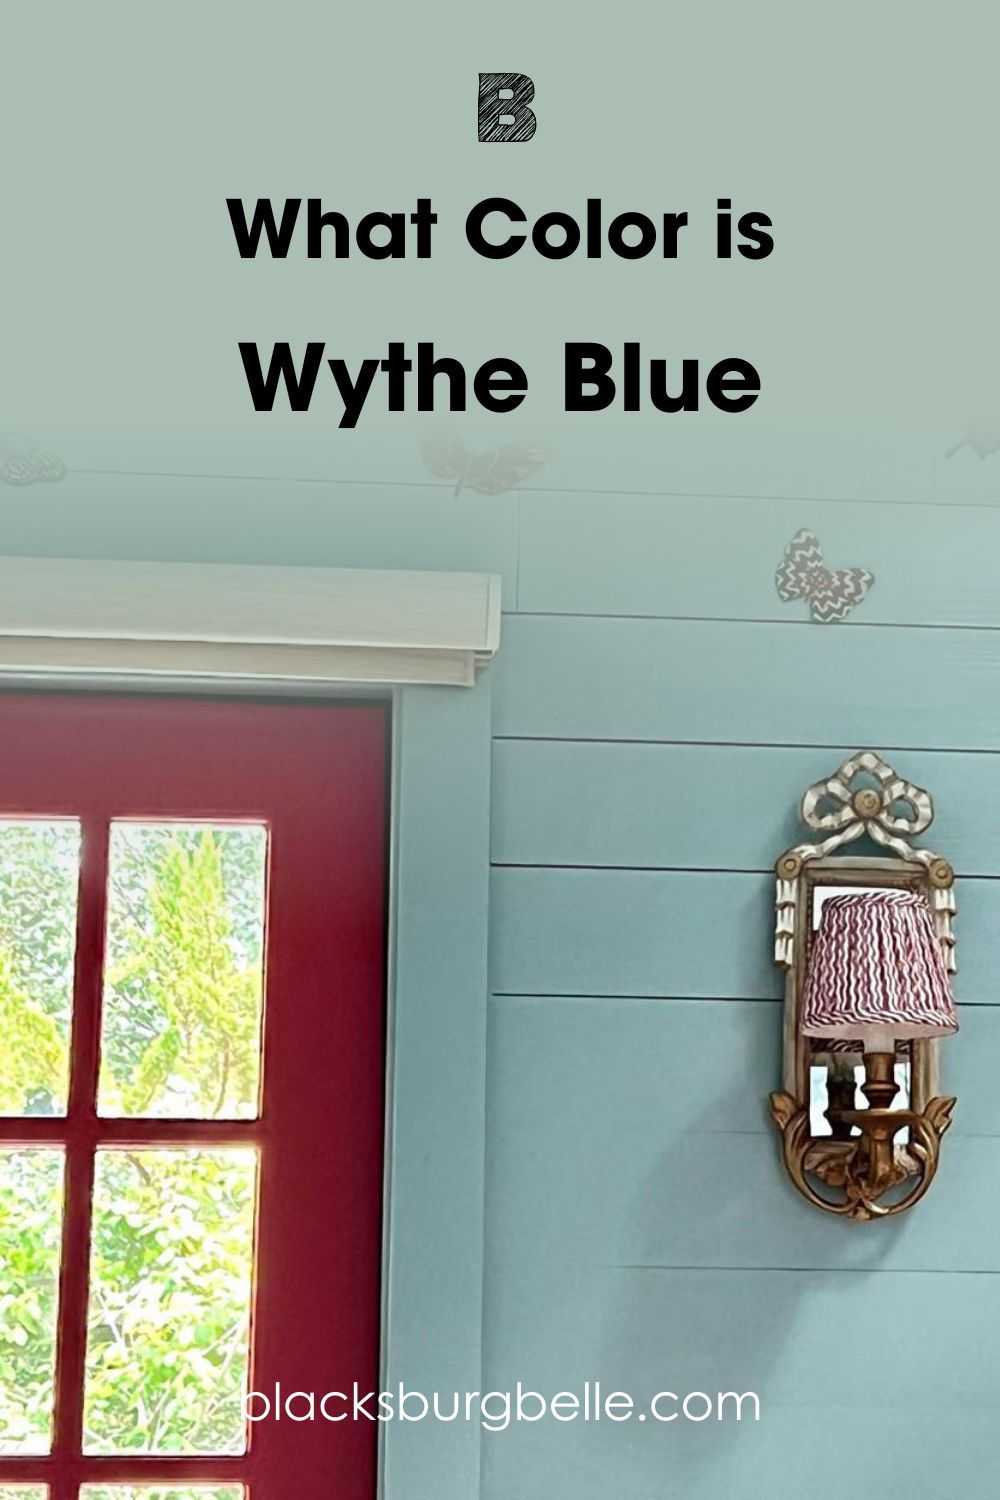 Wythe Blue 